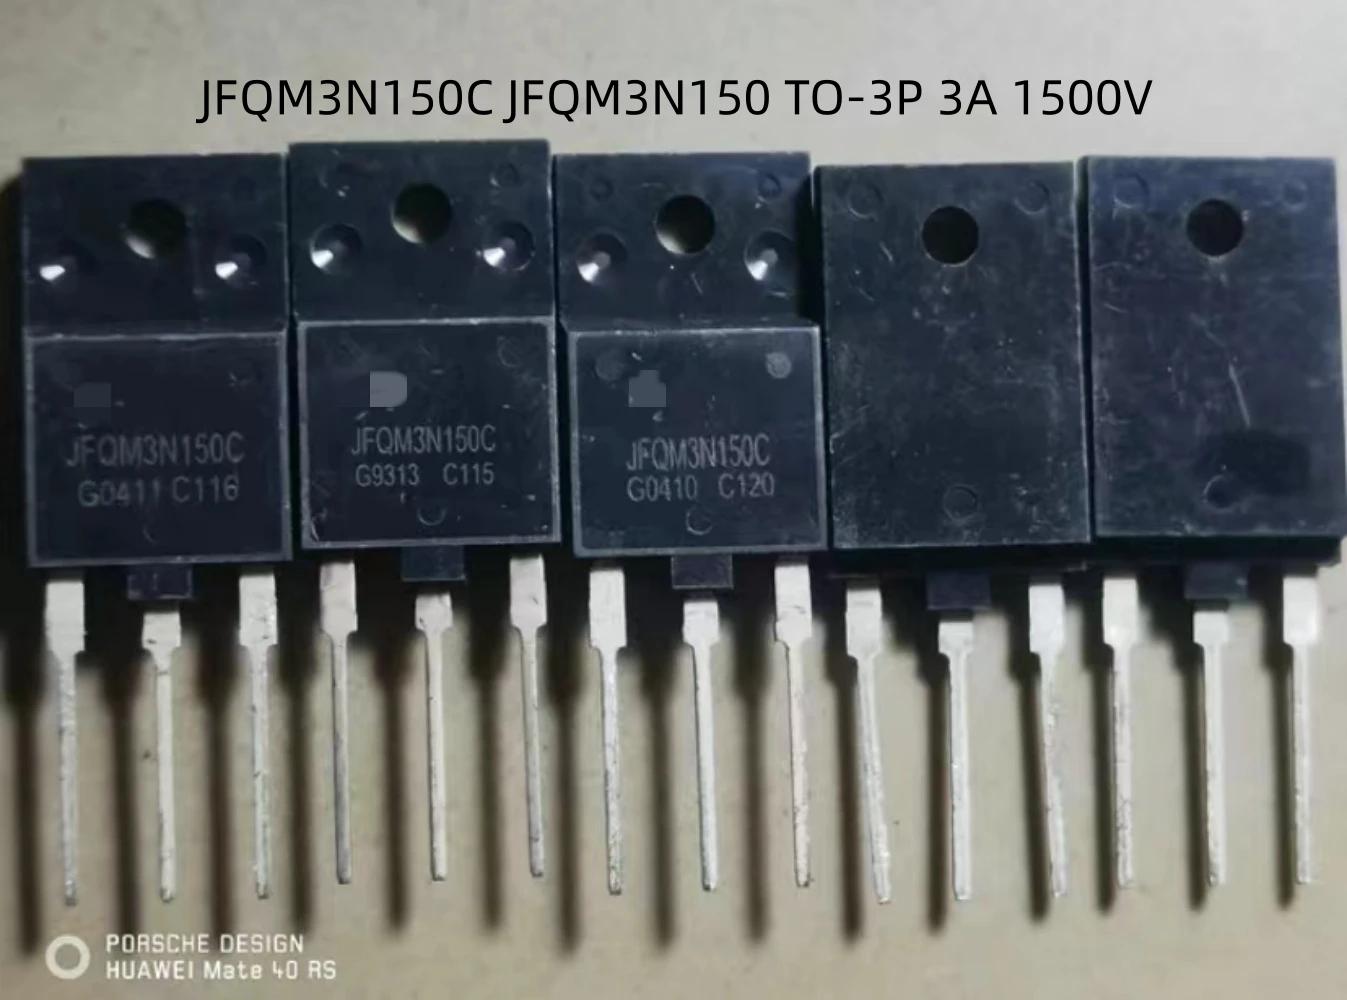 JFQM3N150C JFQM3N150 TO-3P 3A 1500V